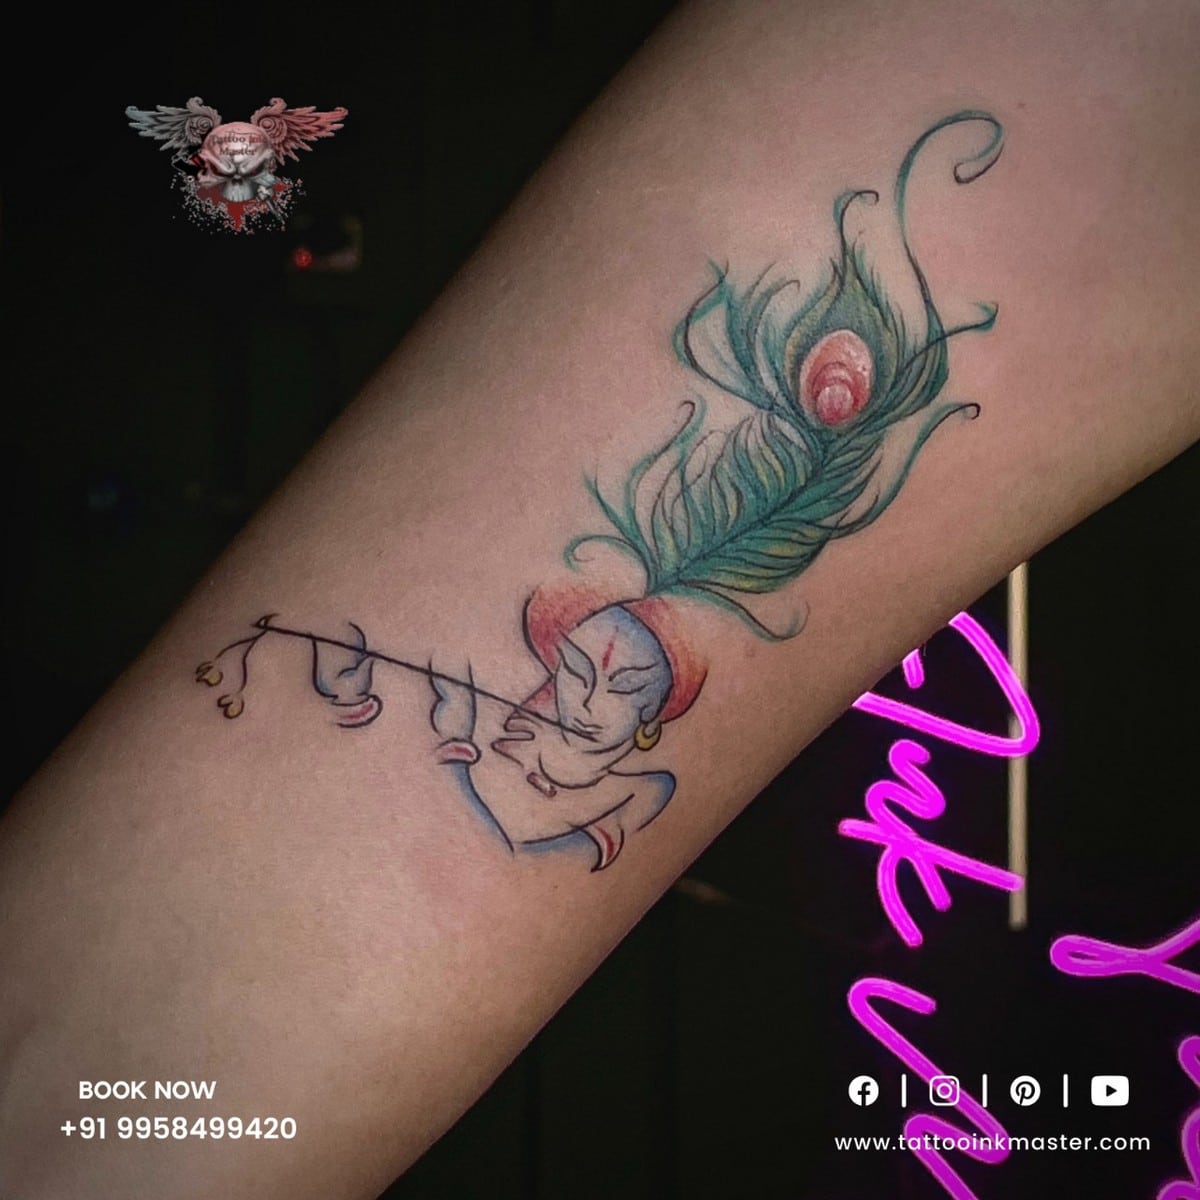 krishna tattoo | Tattoo Ink Master